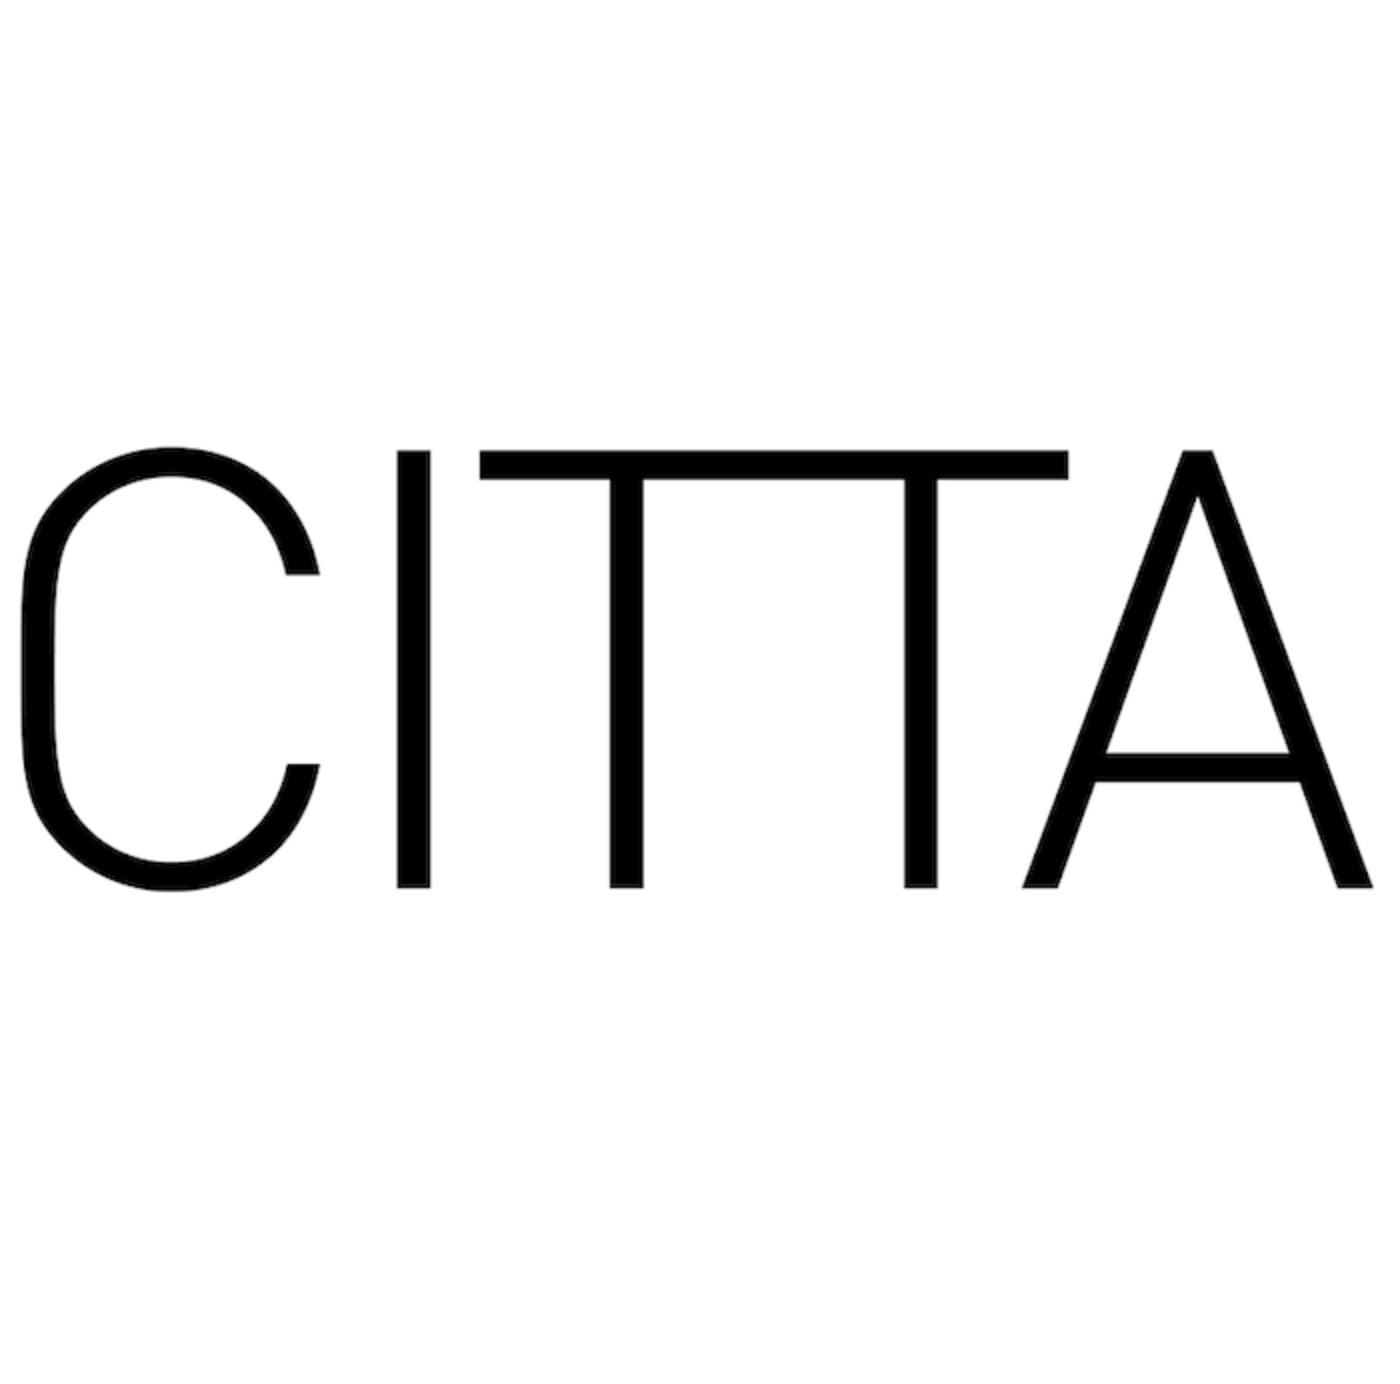 Citta's logo